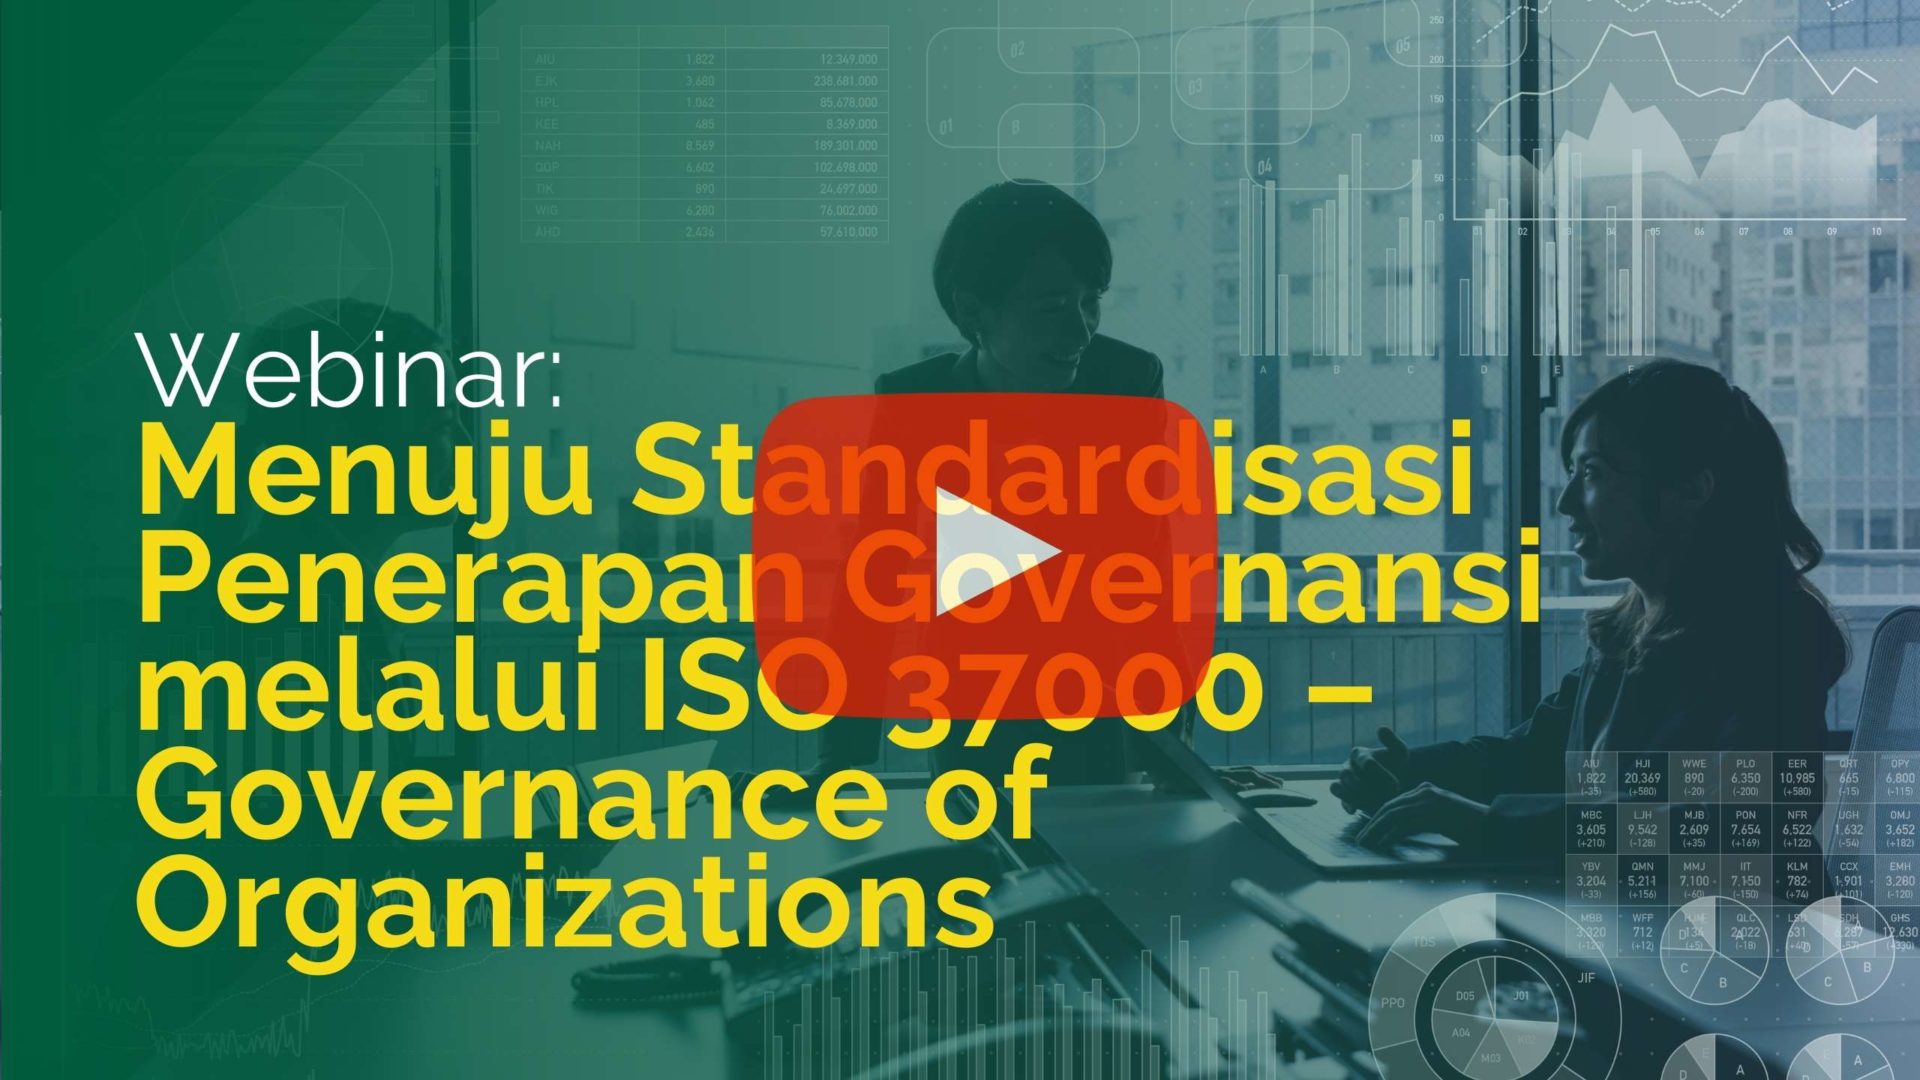 Webinar: Menuju Standardisasi Penerapan Governansi melalui ISO 37000 – Governance of Organizations